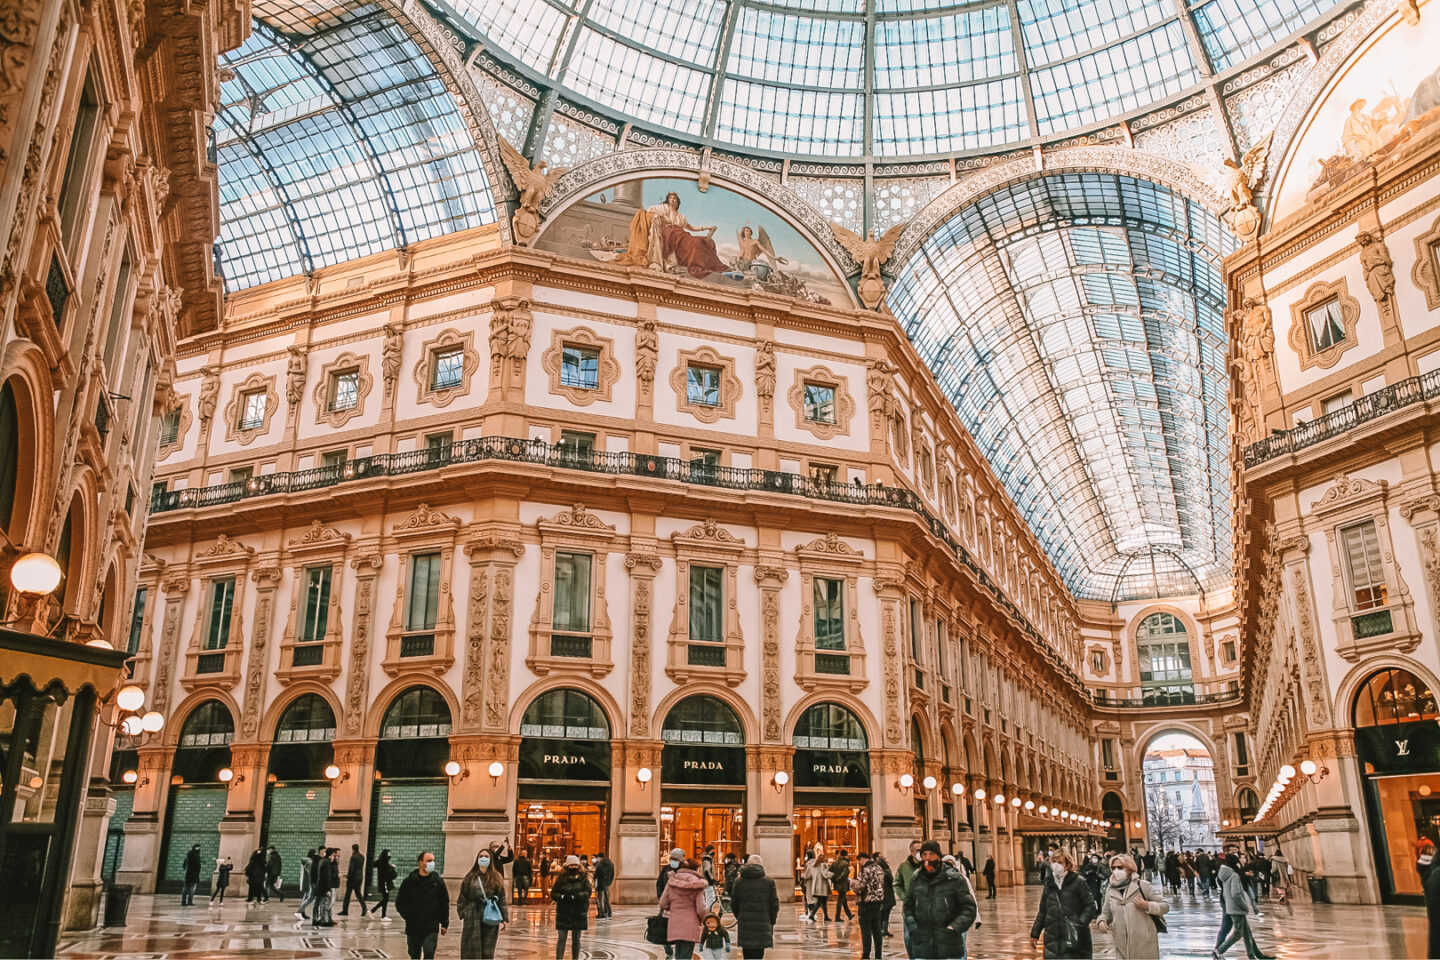 The beautiful Galleria Vittorio Emanuele II